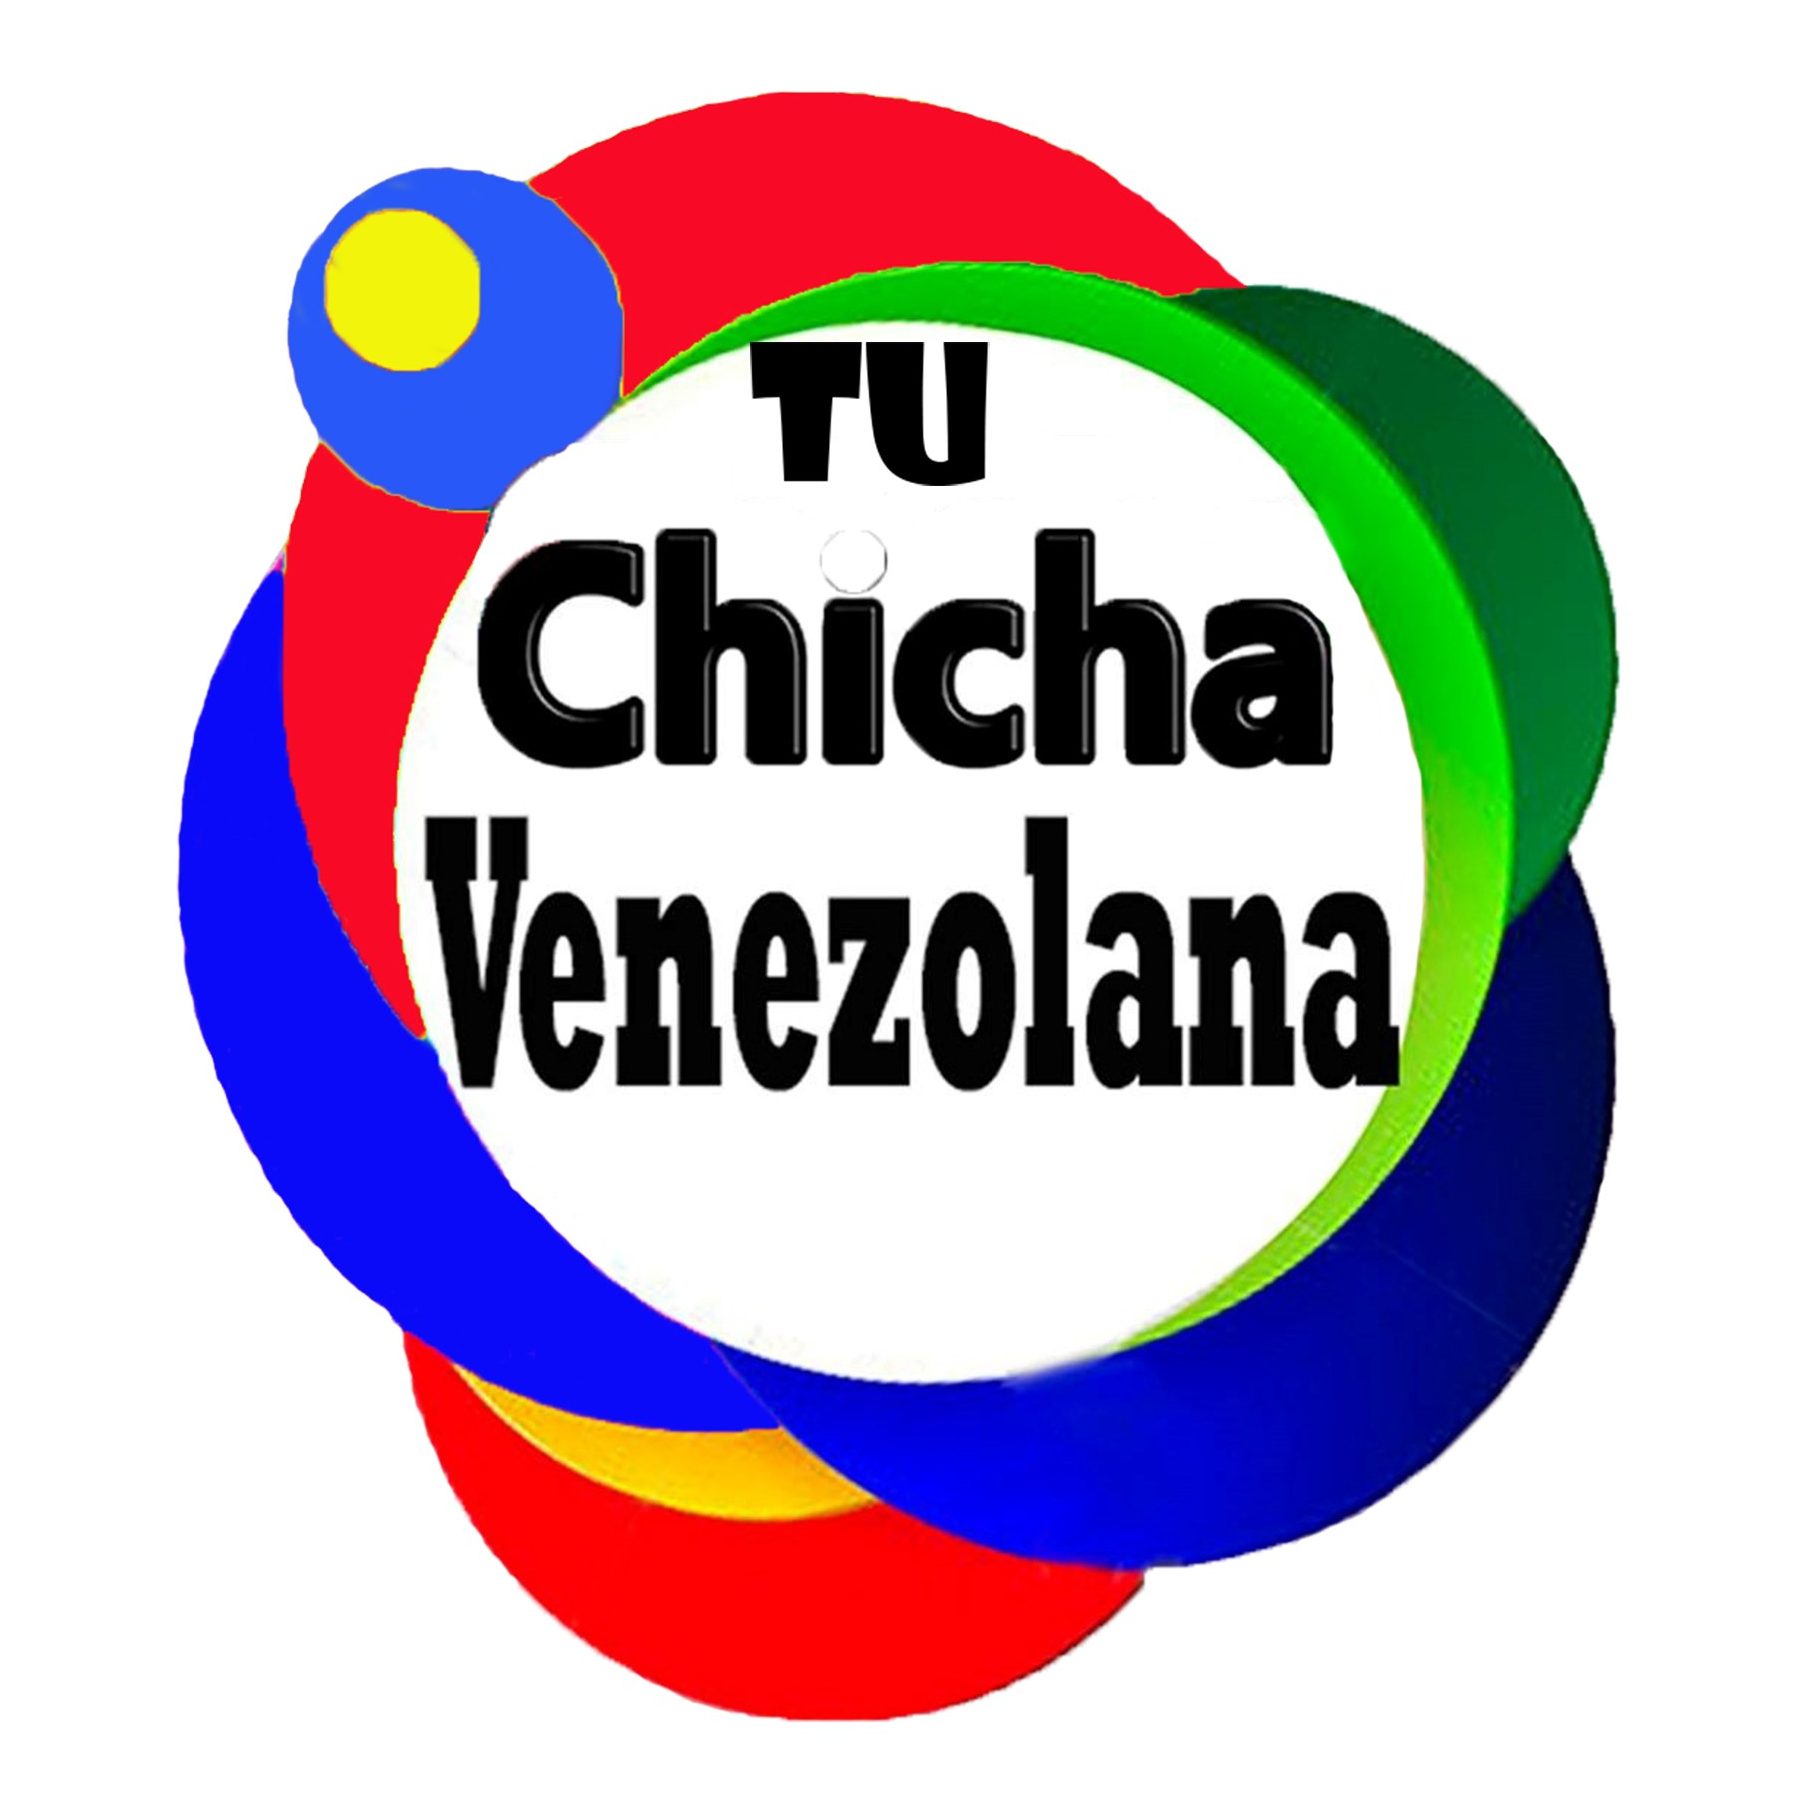 TU CHICHA VENEZOLANA